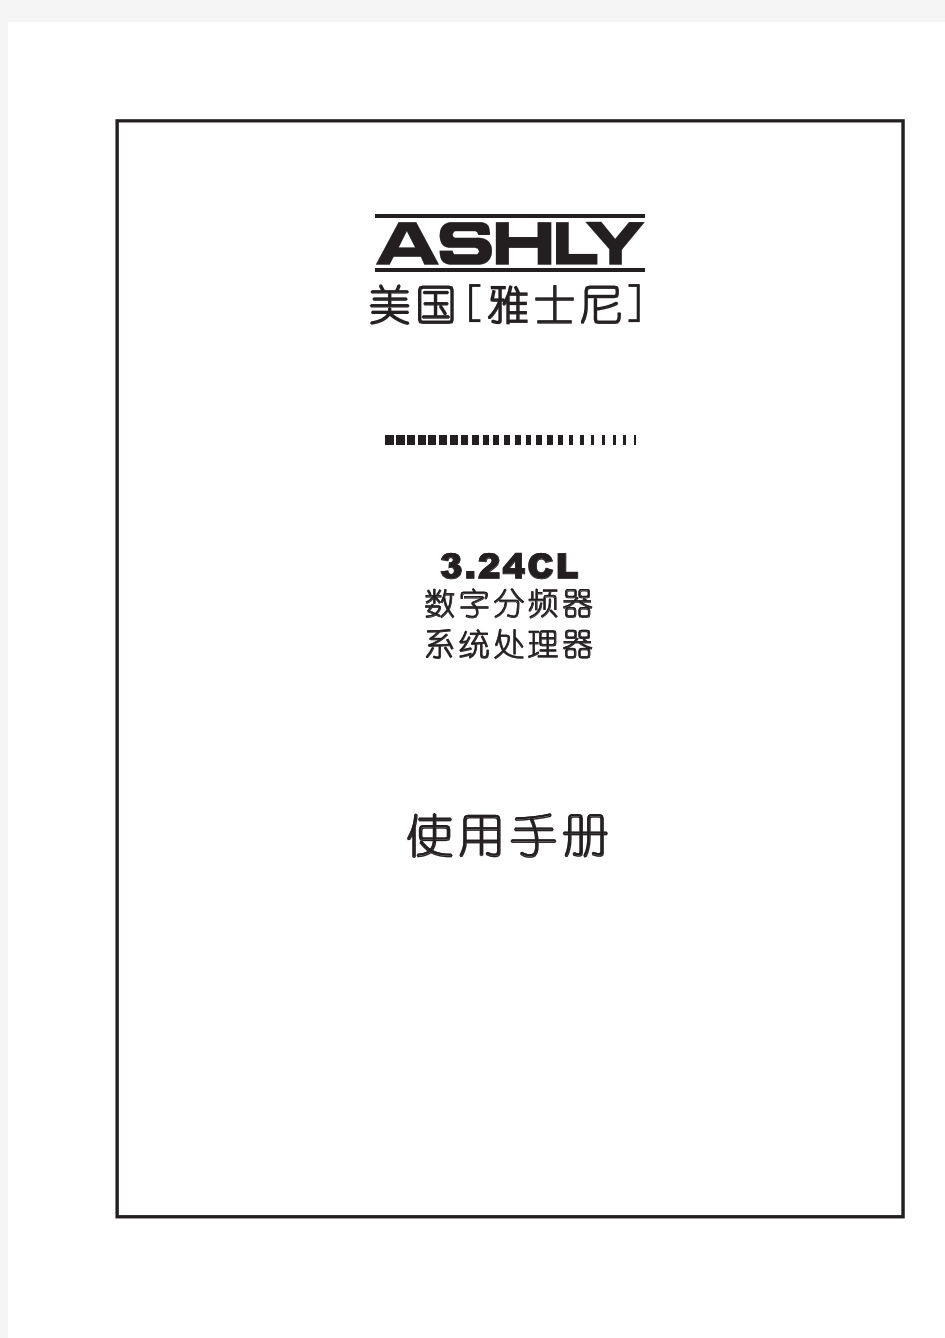 ashly中文说明书